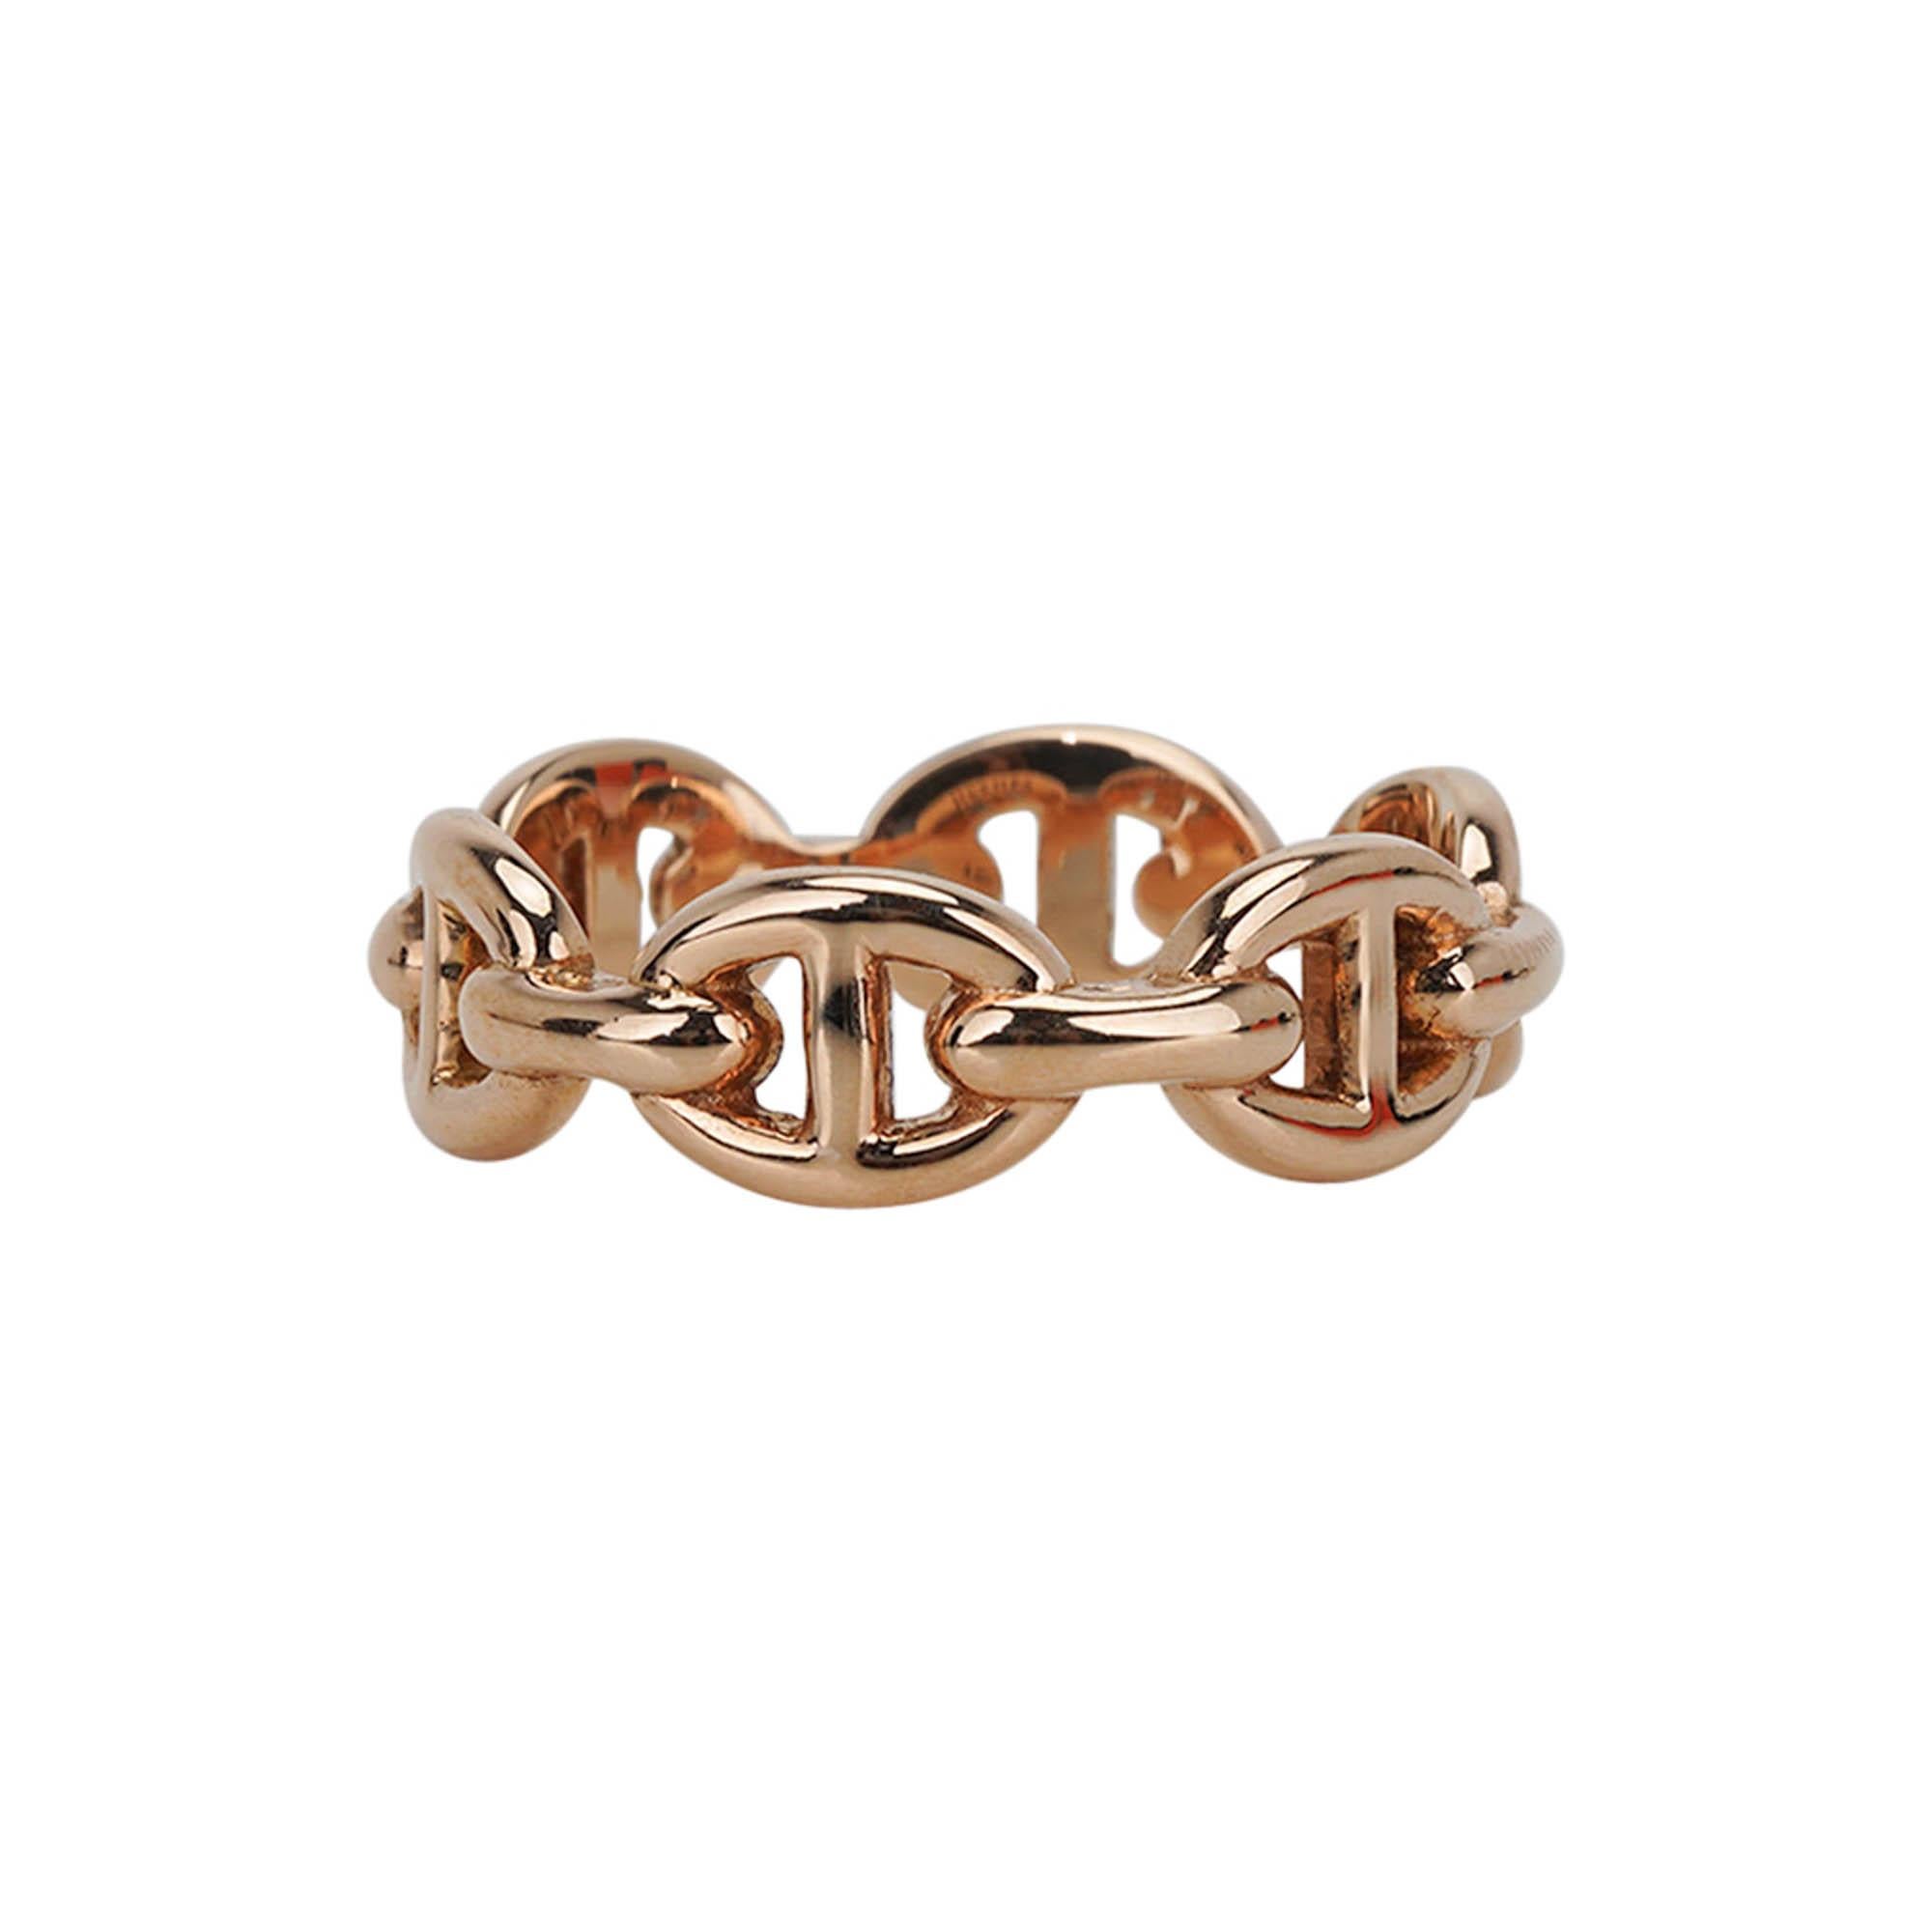 Mightychic bietet einen Hermes Chaine d'Ancre Enchainee Ring in 18k Rose Gold.
Das kleine Modell für den Alltag und die schlichte Eleganz.
Ein schönes und zeitloses Stück.
NEU oder NIE GEBRAUCHT.
Endverkauf

GRÖSSE 51

RINGBREITE
0.23